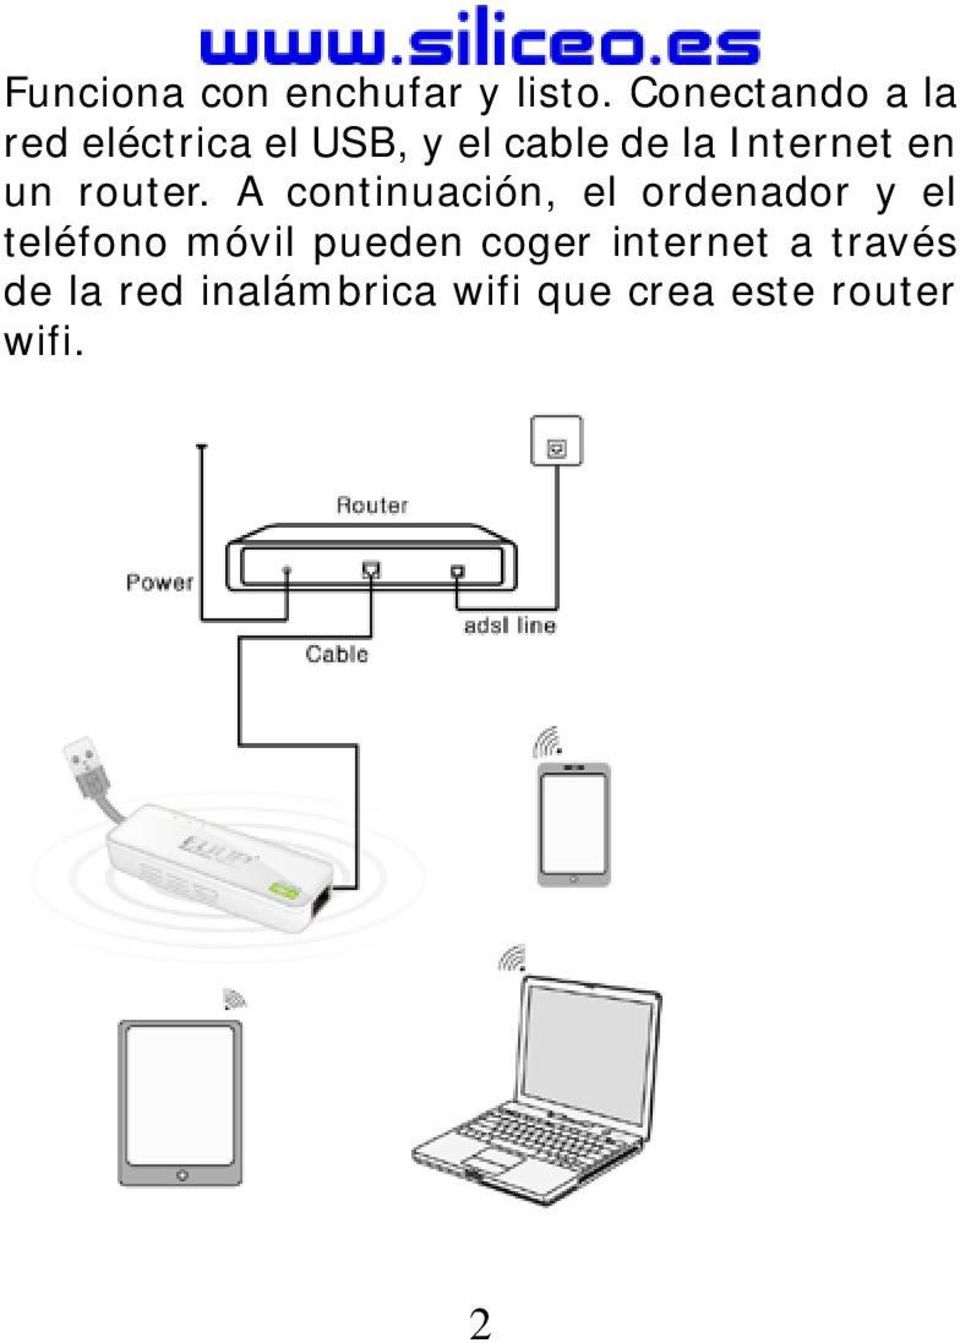 Internet en un router.